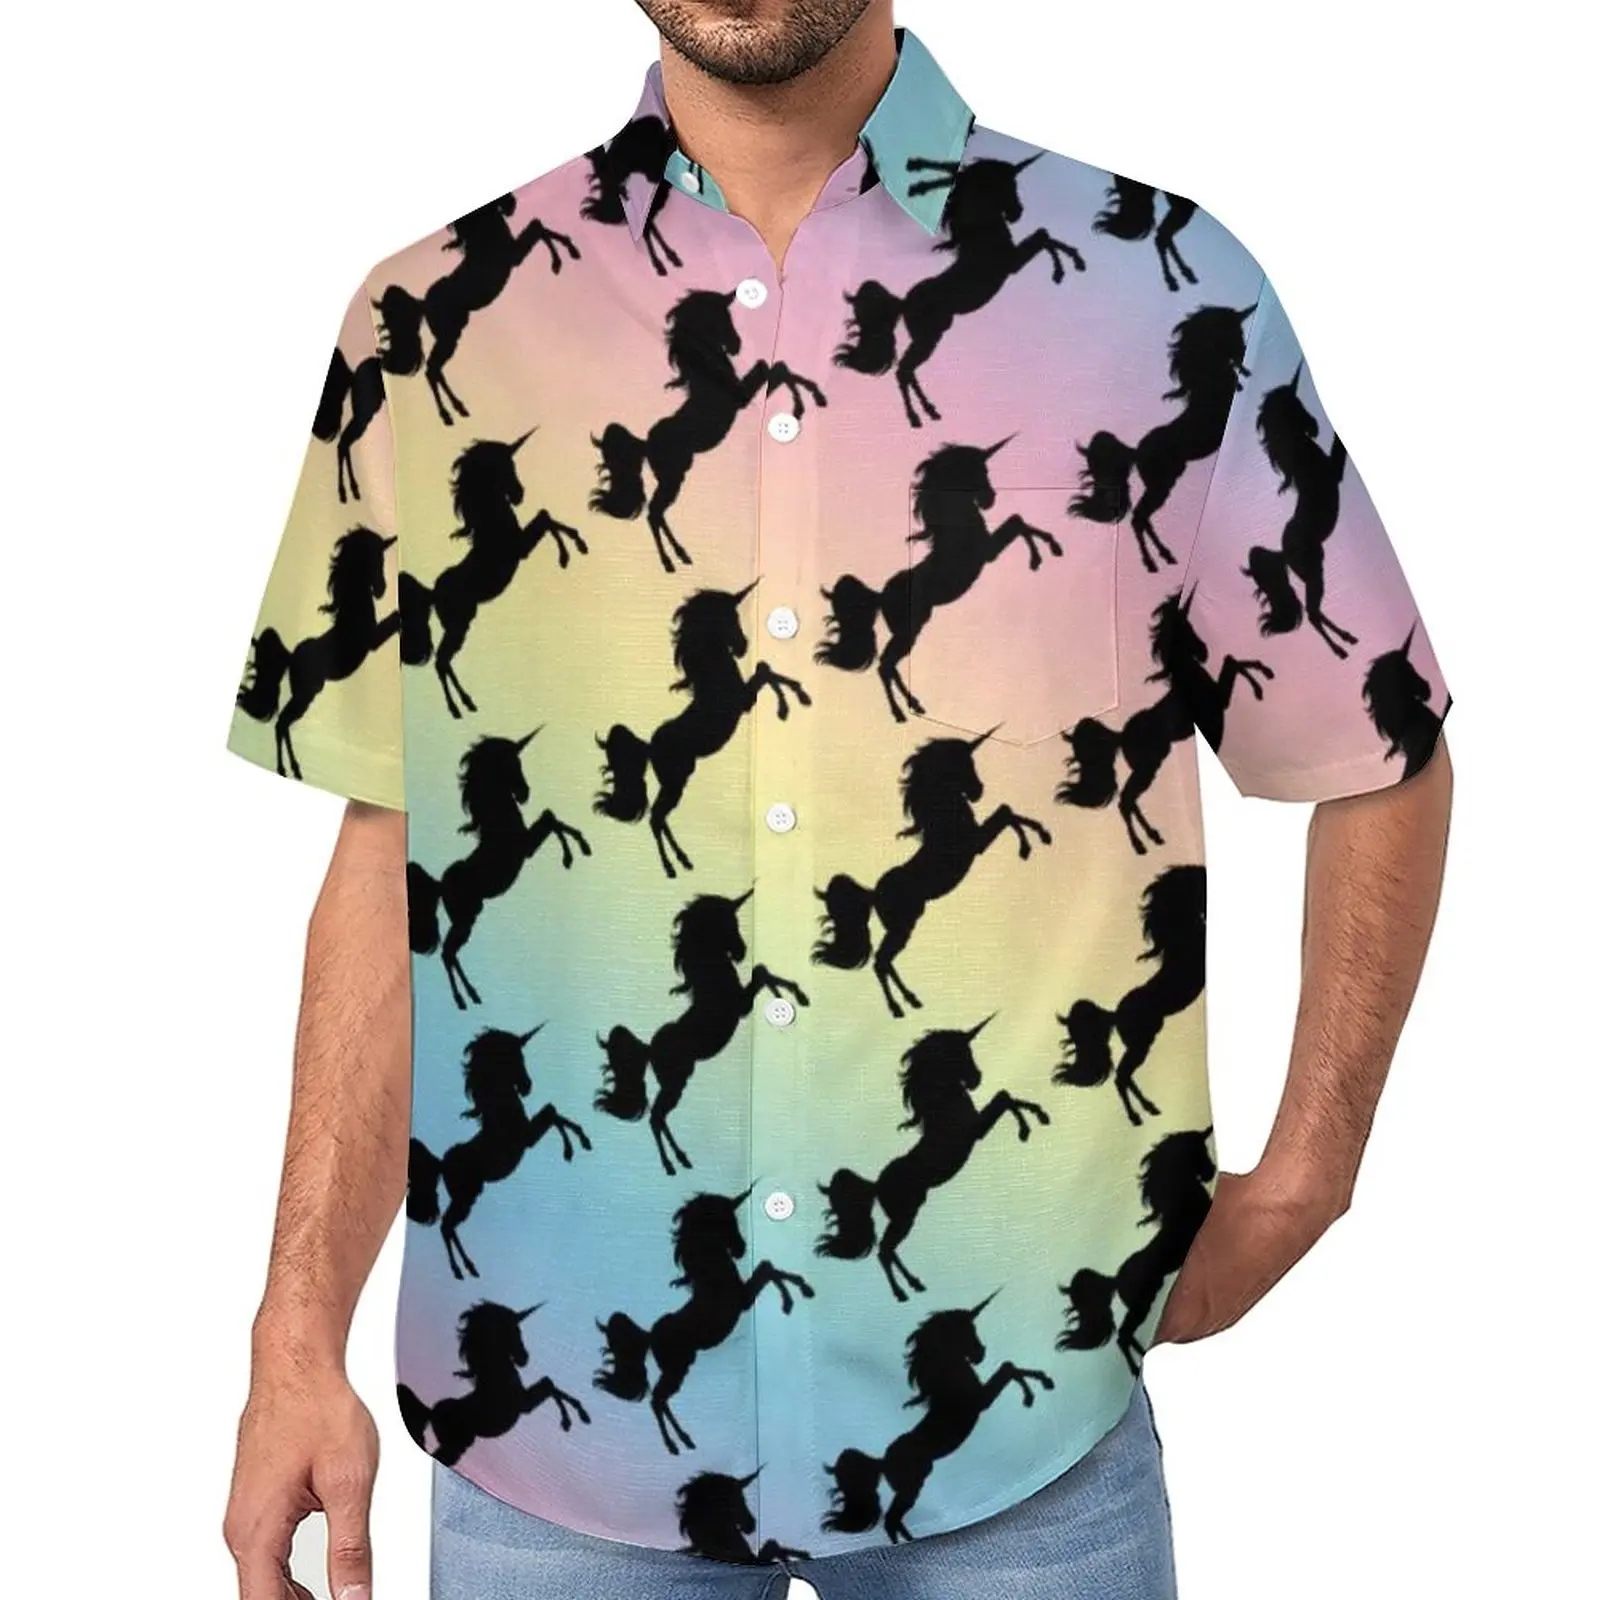 

Свободная рубашка для отпуска, Повседневная Блузка с пастельным и радужным принтом, с силуэтом единорога, гавайская винтажная блузка оверсайз с коротким рукавом, черного цвета